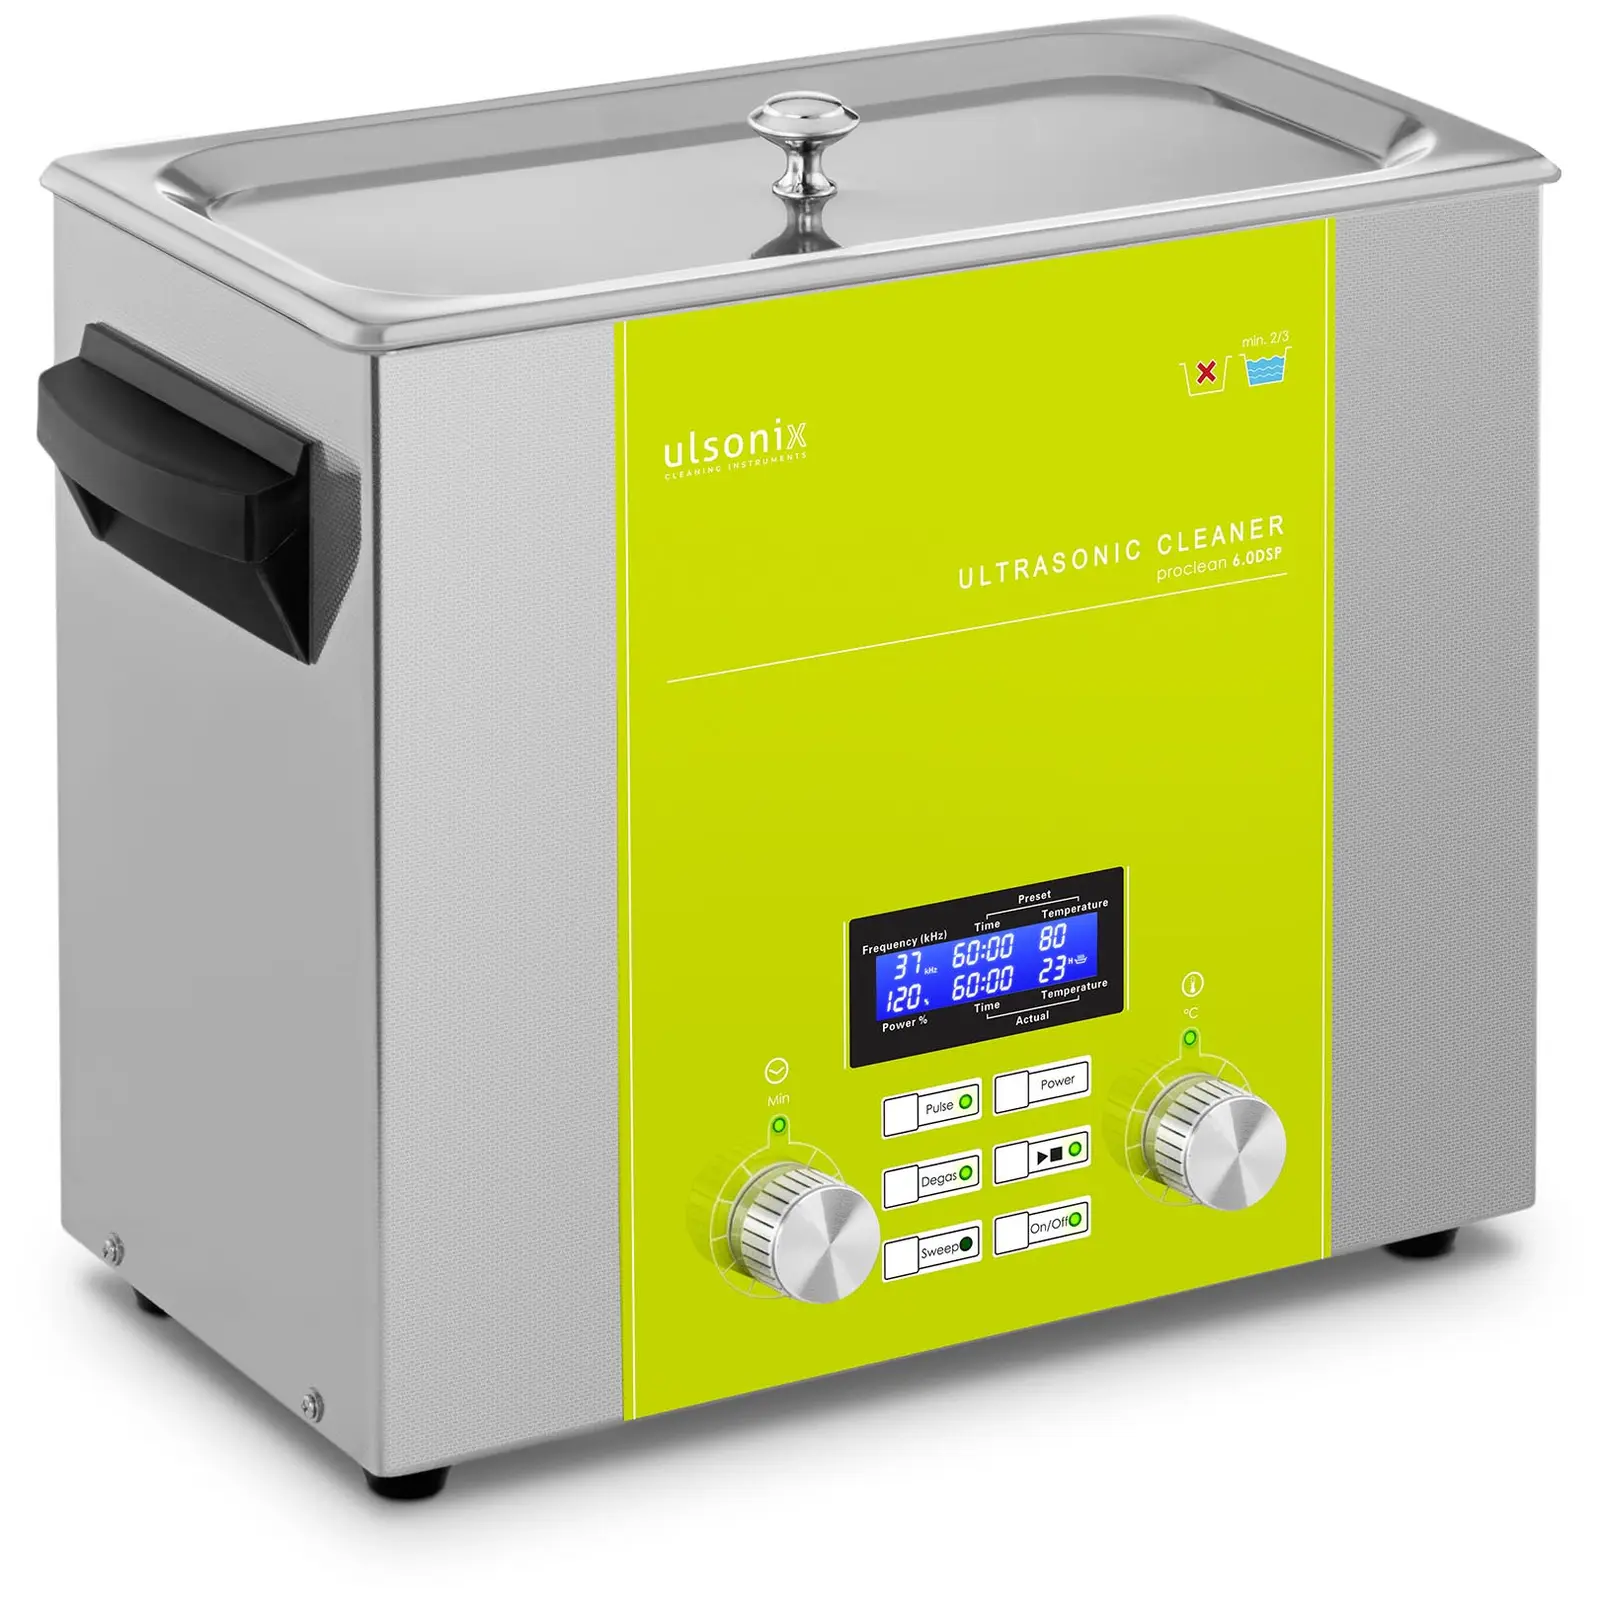 Ultralydvasker - 6 liter - degas - sweep - pulse